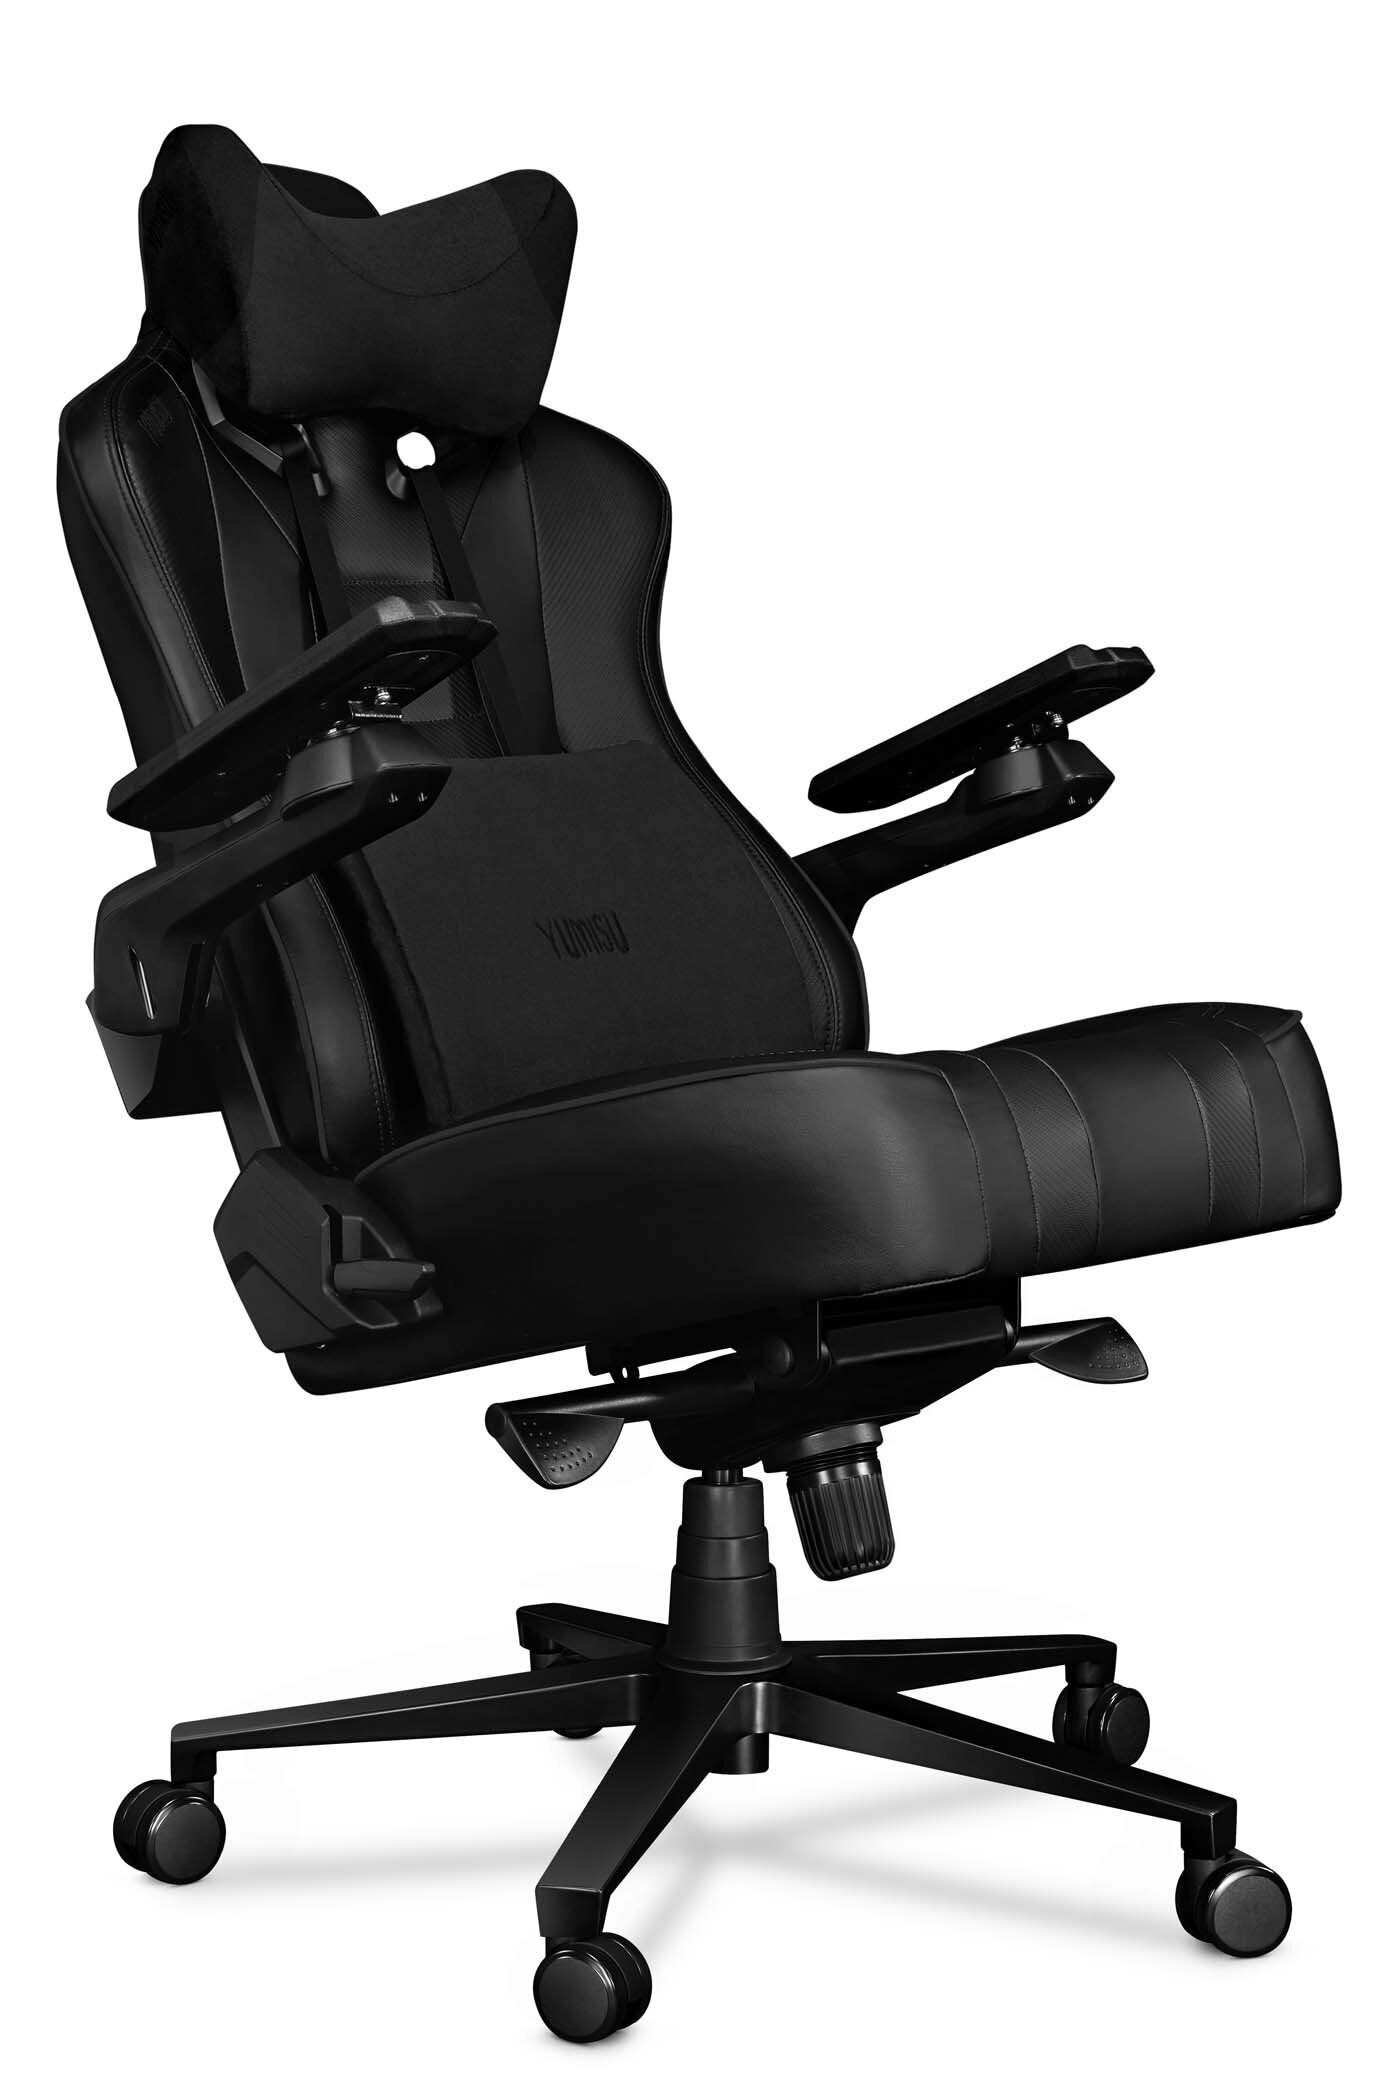 Kompiuterio kėdė Yumisu 2049, kompiuterinių žaidimų žaidėjams, juodos  spalvos, 2049 BLACK/BLACK kaina | pigu.lt